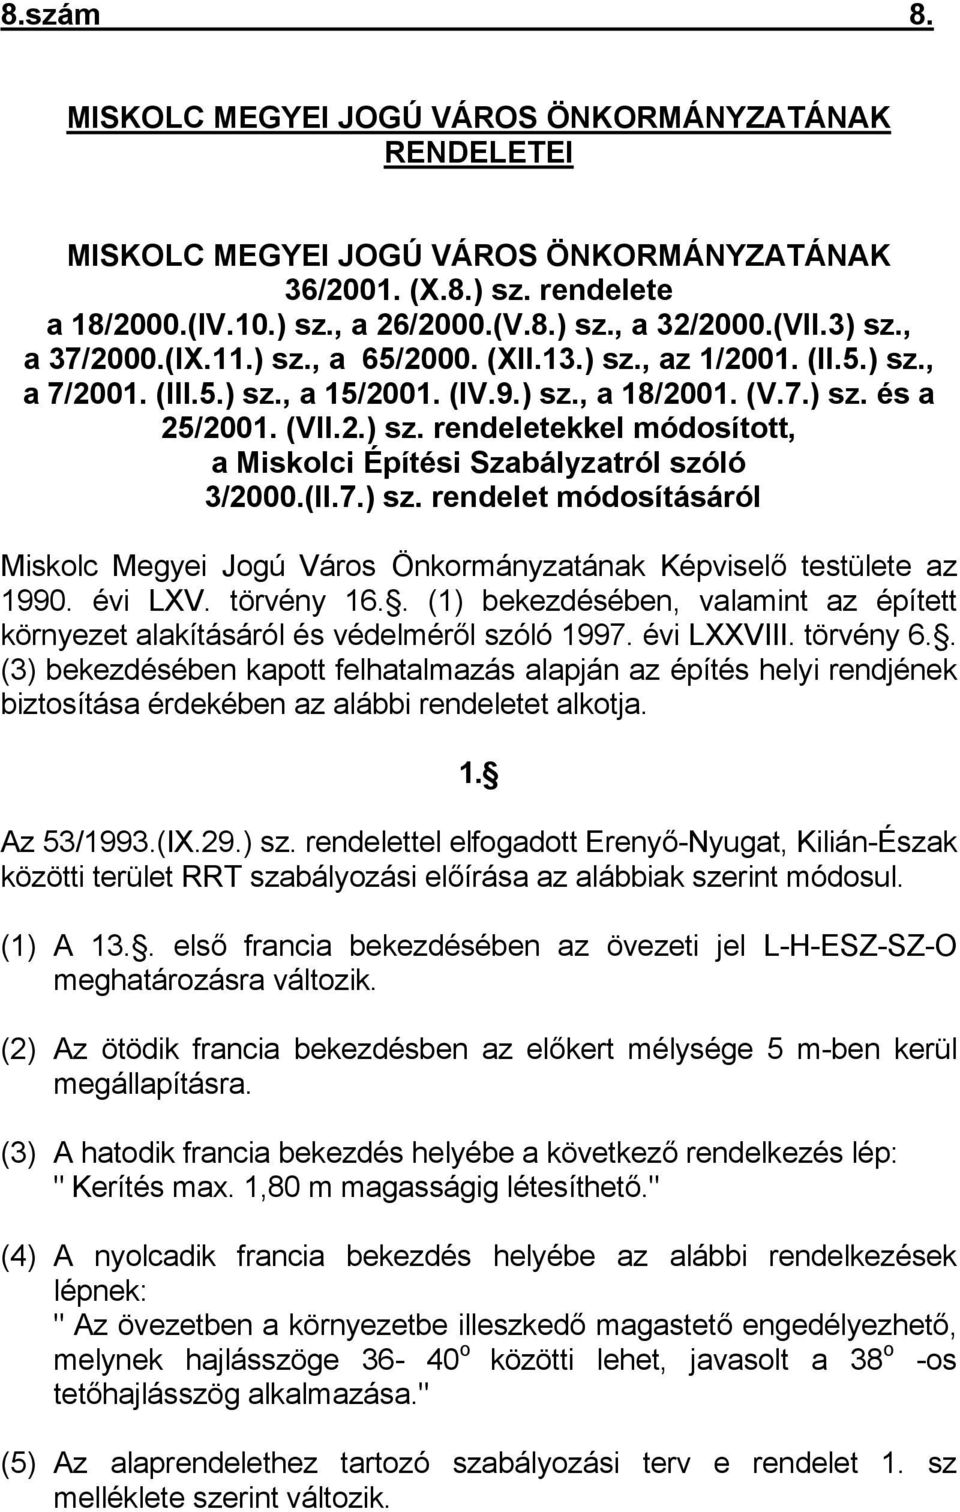 (II.7.) sz. rendelet módosításáról Miskolc Megyei Jogú Város Önkormányzatának Képviselő testülete az 1990. évi LXV. törvény 16.